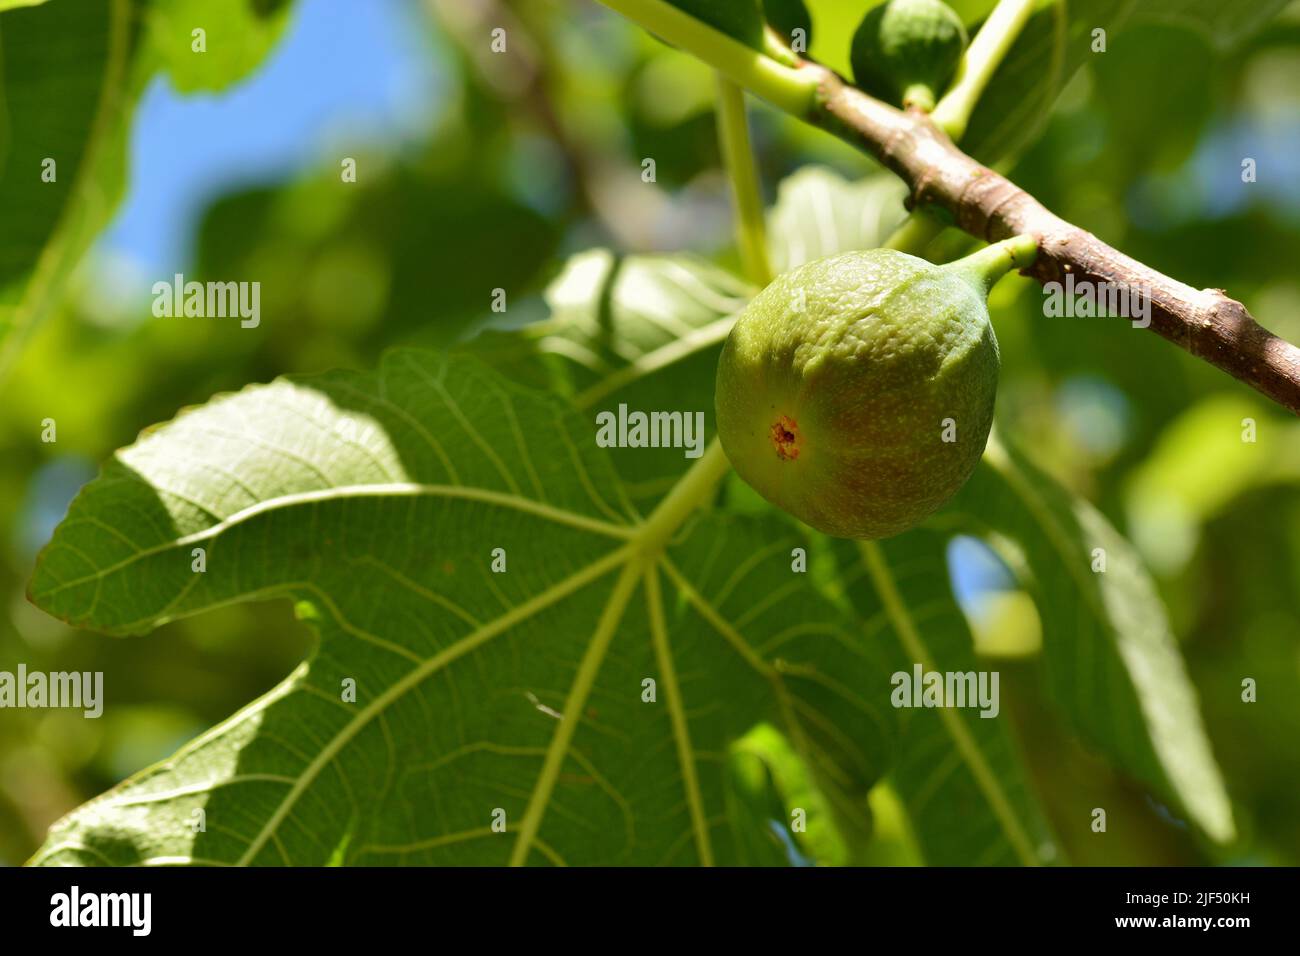 Detalle de los frutos de la higuera, ficus carica, en su árbol en verano Stock Photo